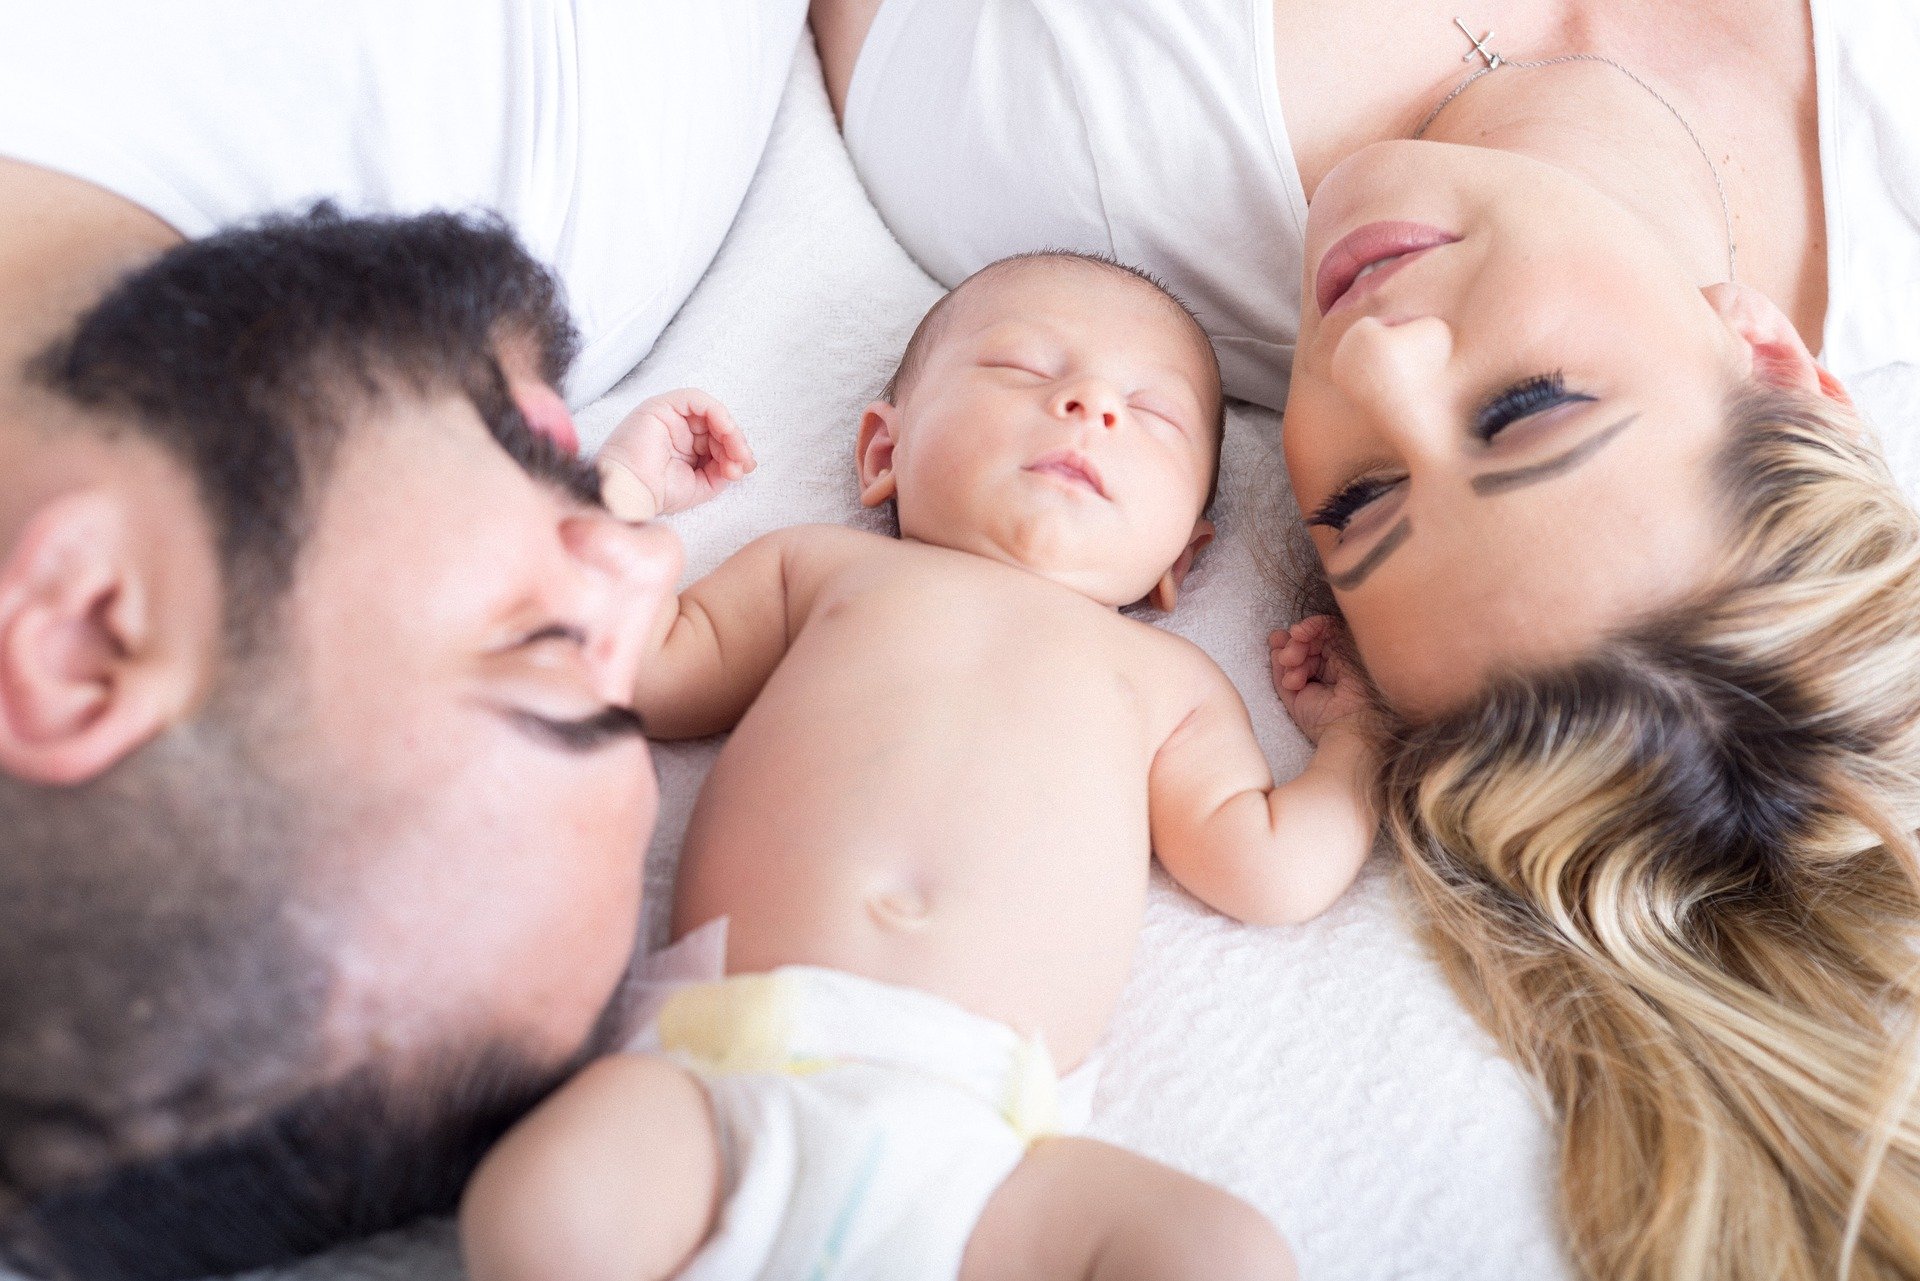 Urlop rodzicielski przysługuje zaraz po zakończeniu macierzyńskiego i trwa 32 tygodnie. Oboje rodzice mają prawo z niego skorzystać (Fot. Pixabay)